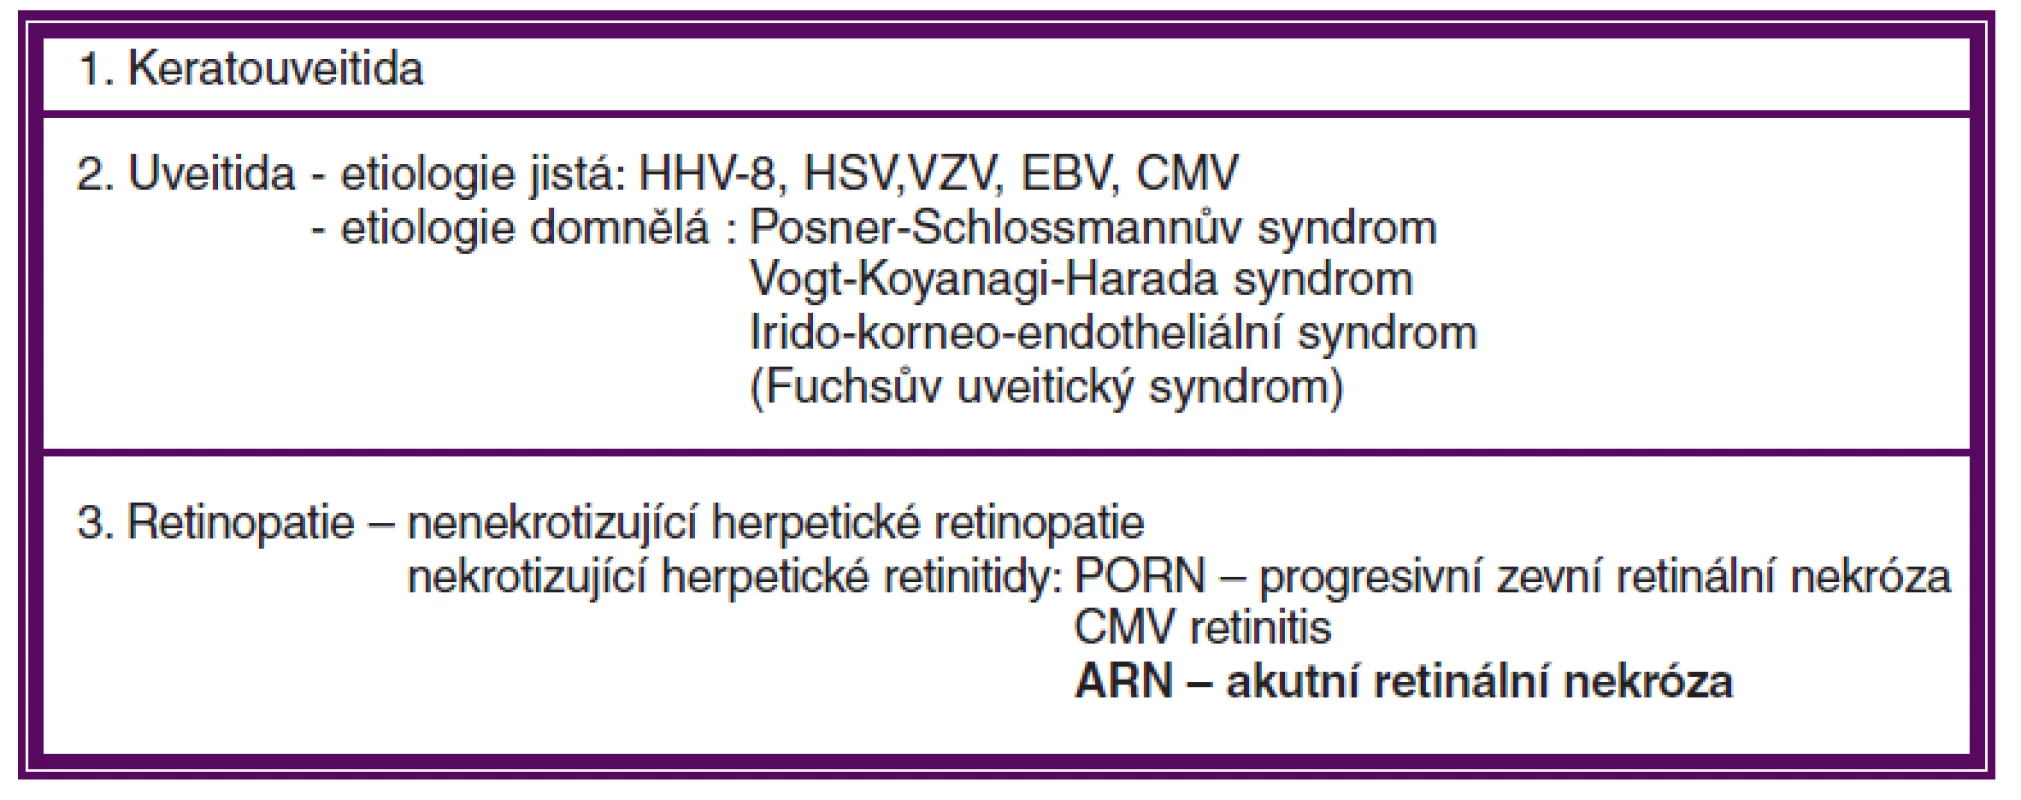 Uveální onemocnění způsobená Herpesviry (podle Pleyera)